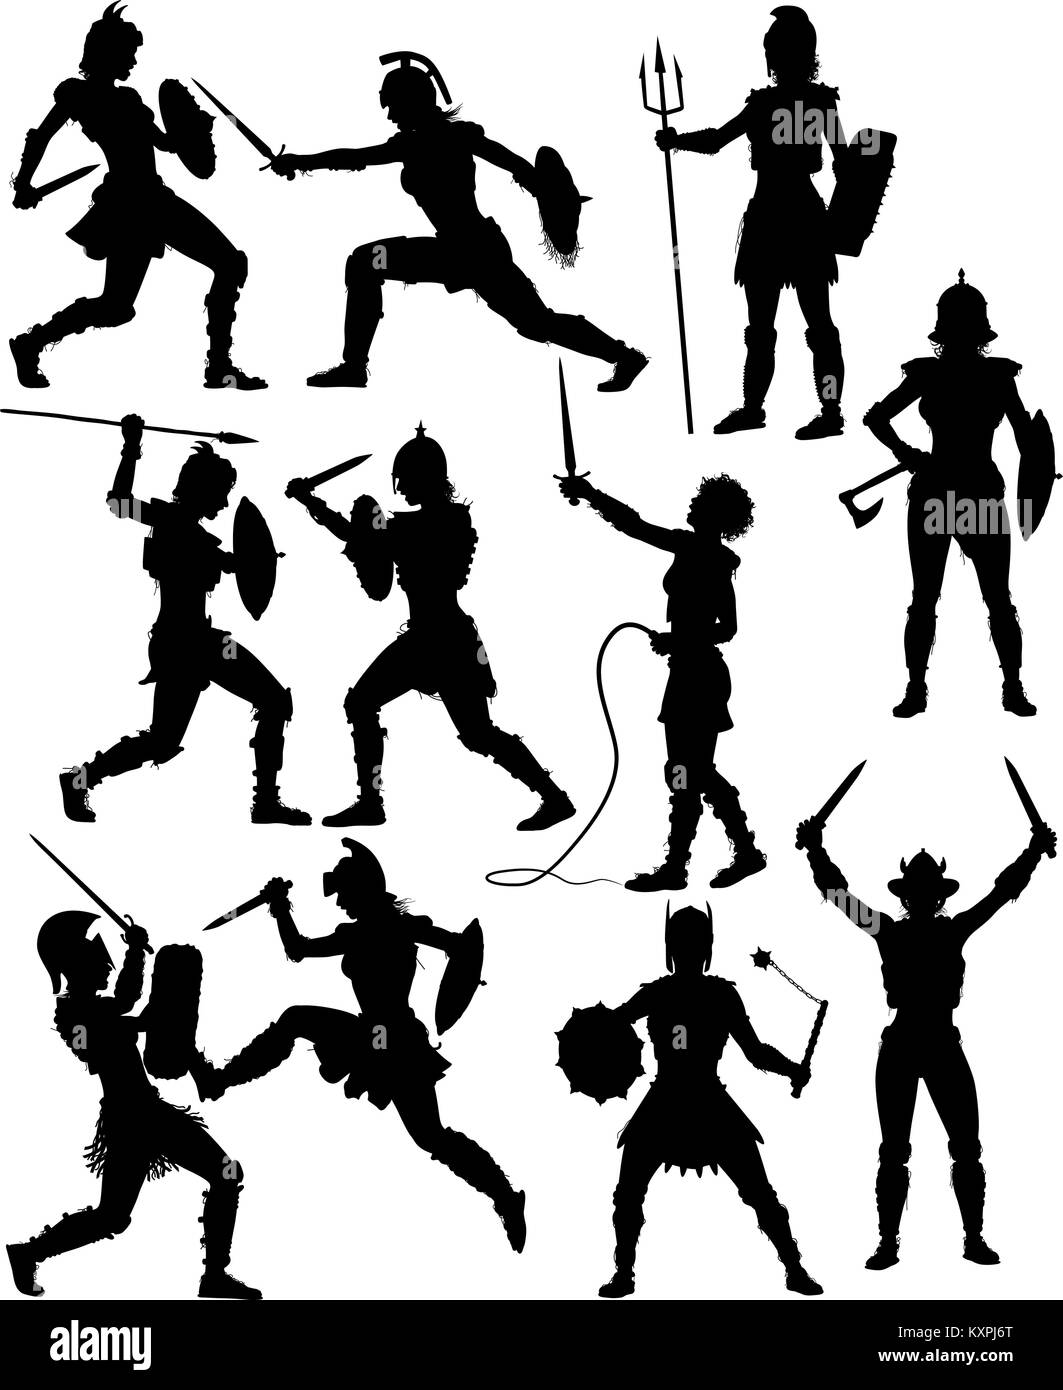 Jeu de silhouettes vecteur modifiable des combats de gladiateurs féminin avec des chiffres et des armes en tant qu'objets séparés Illustration de Vecteur